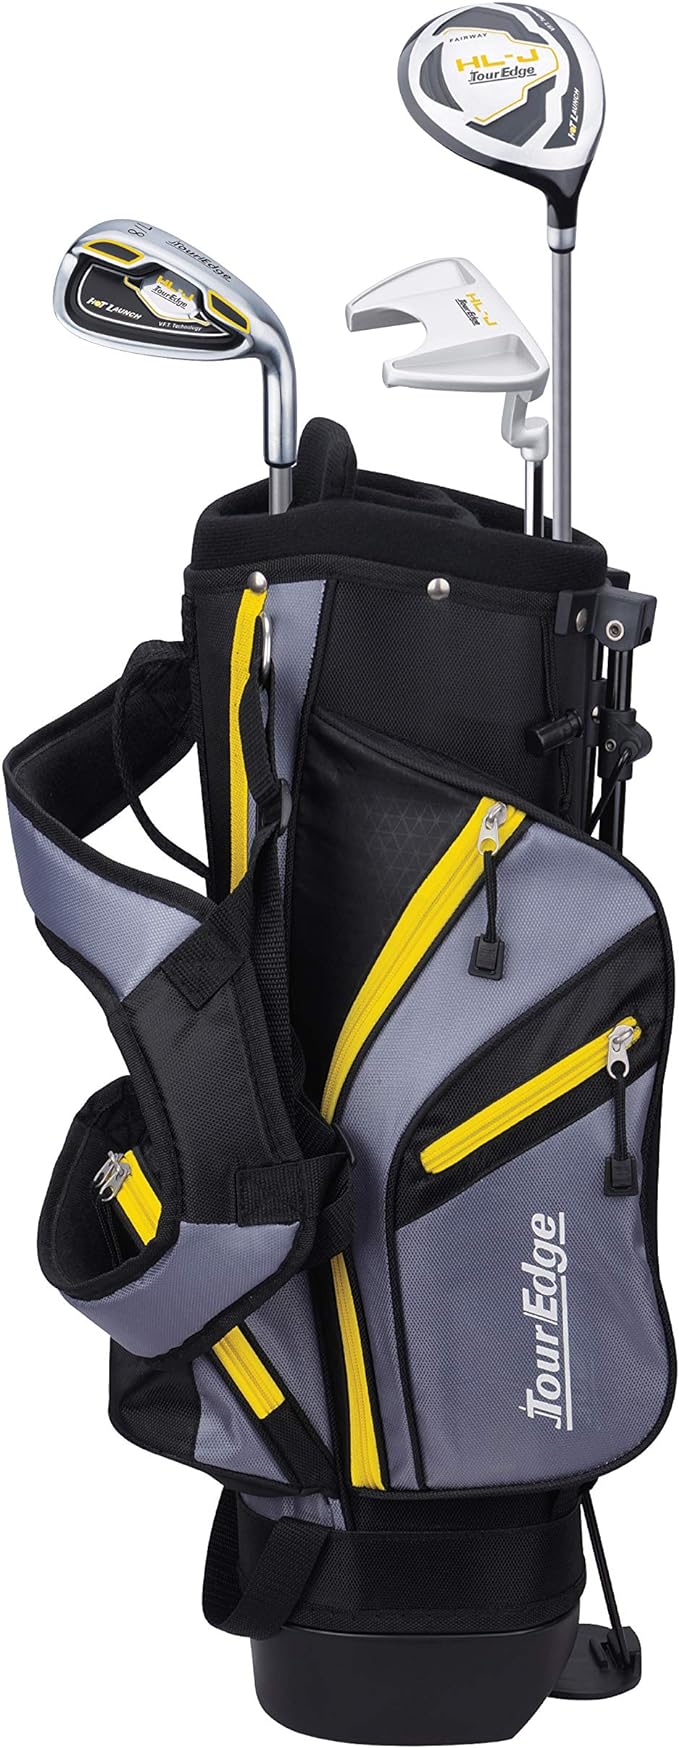 tour edge hl-j junior complete golf set w/ bag multiple sizes  ‎tour edge b07fxqmt2r